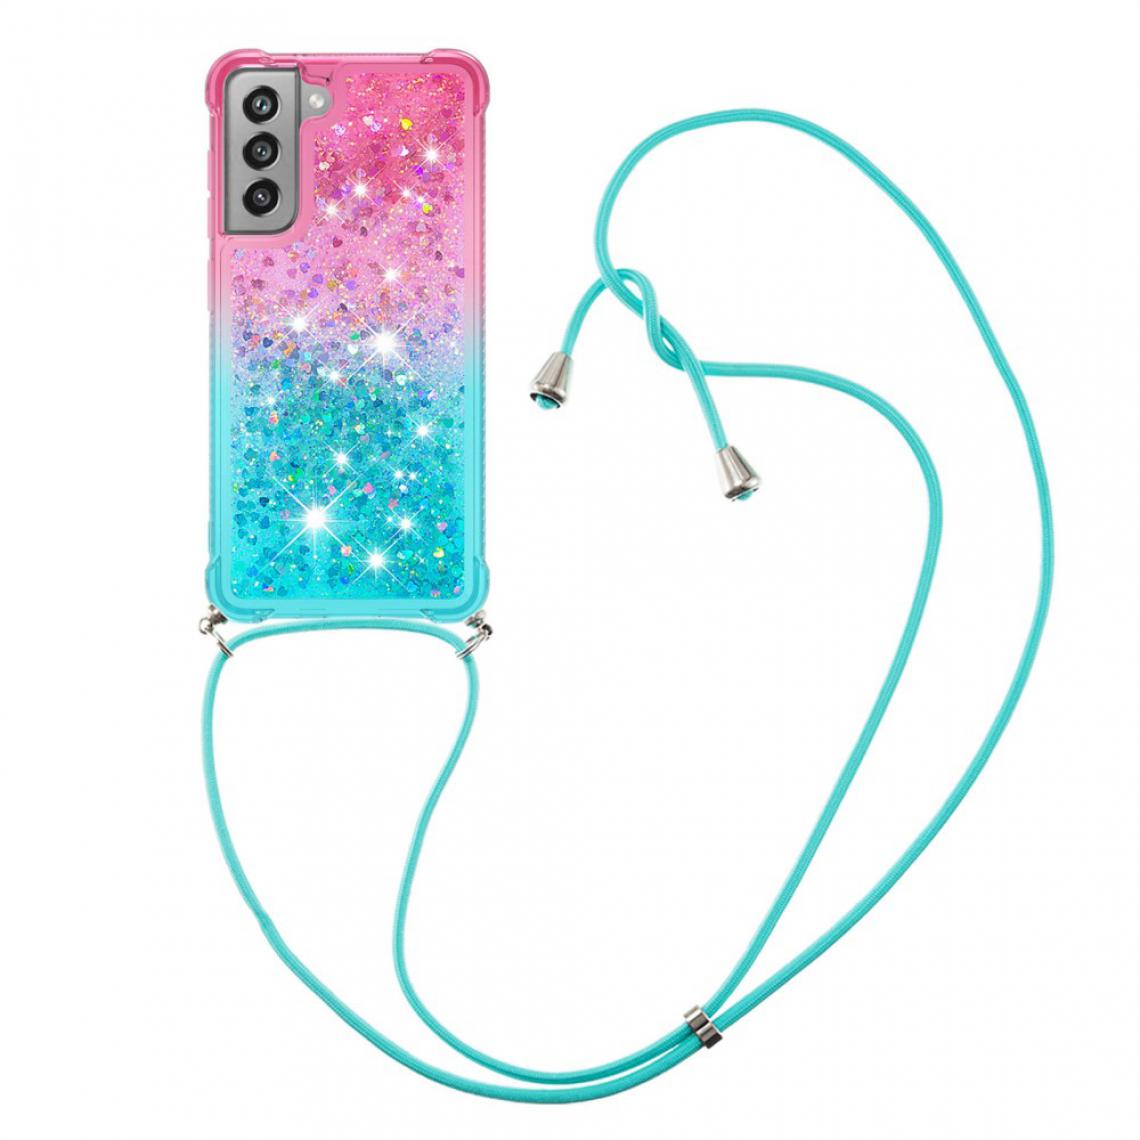 Other - Coque en TPU Dégradé Glitter Squins Quicksand Antichoc souple avec lanière rose/bleu ciel pour votre Samsung Galaxy S21 FE - Coque, étui smartphone